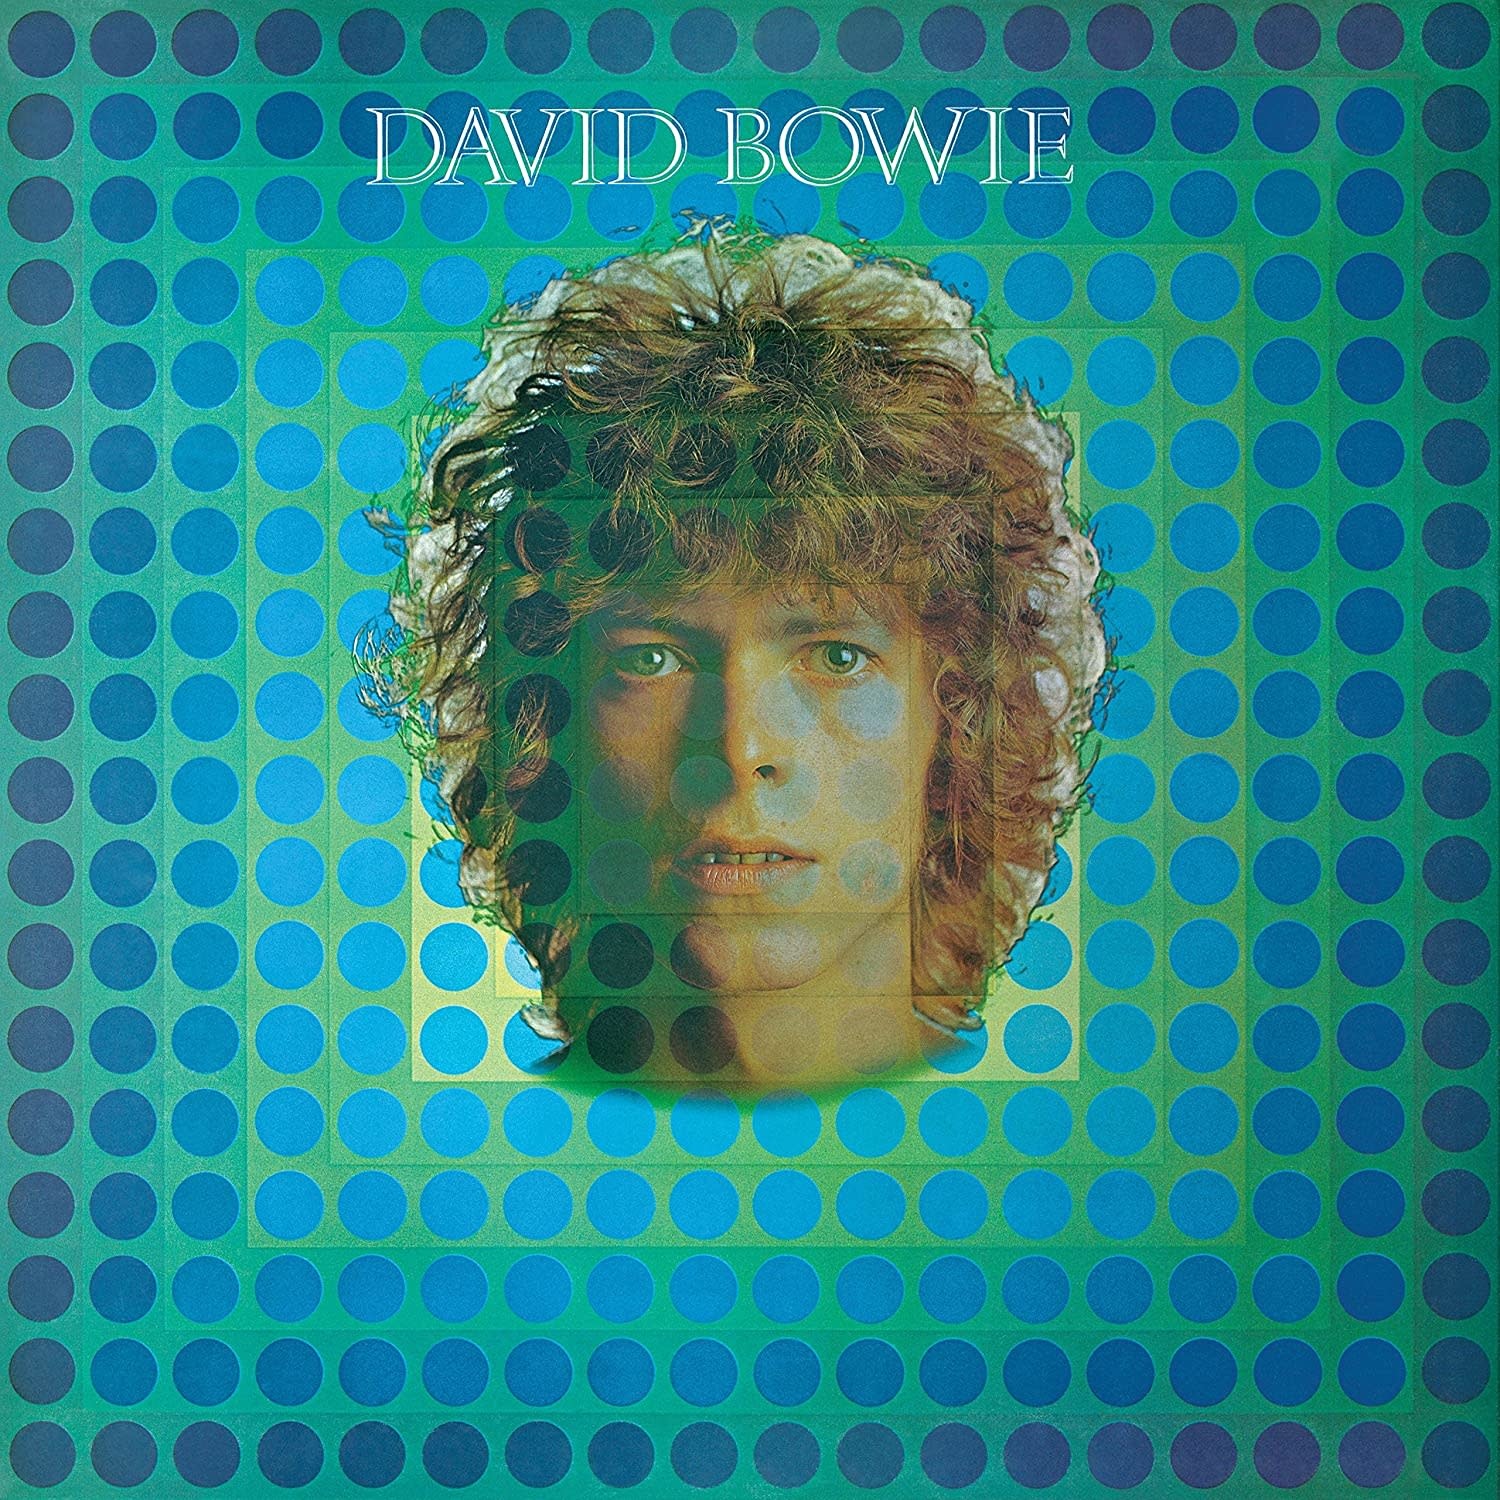 David Bowie - David Bowie (Space Oddity)